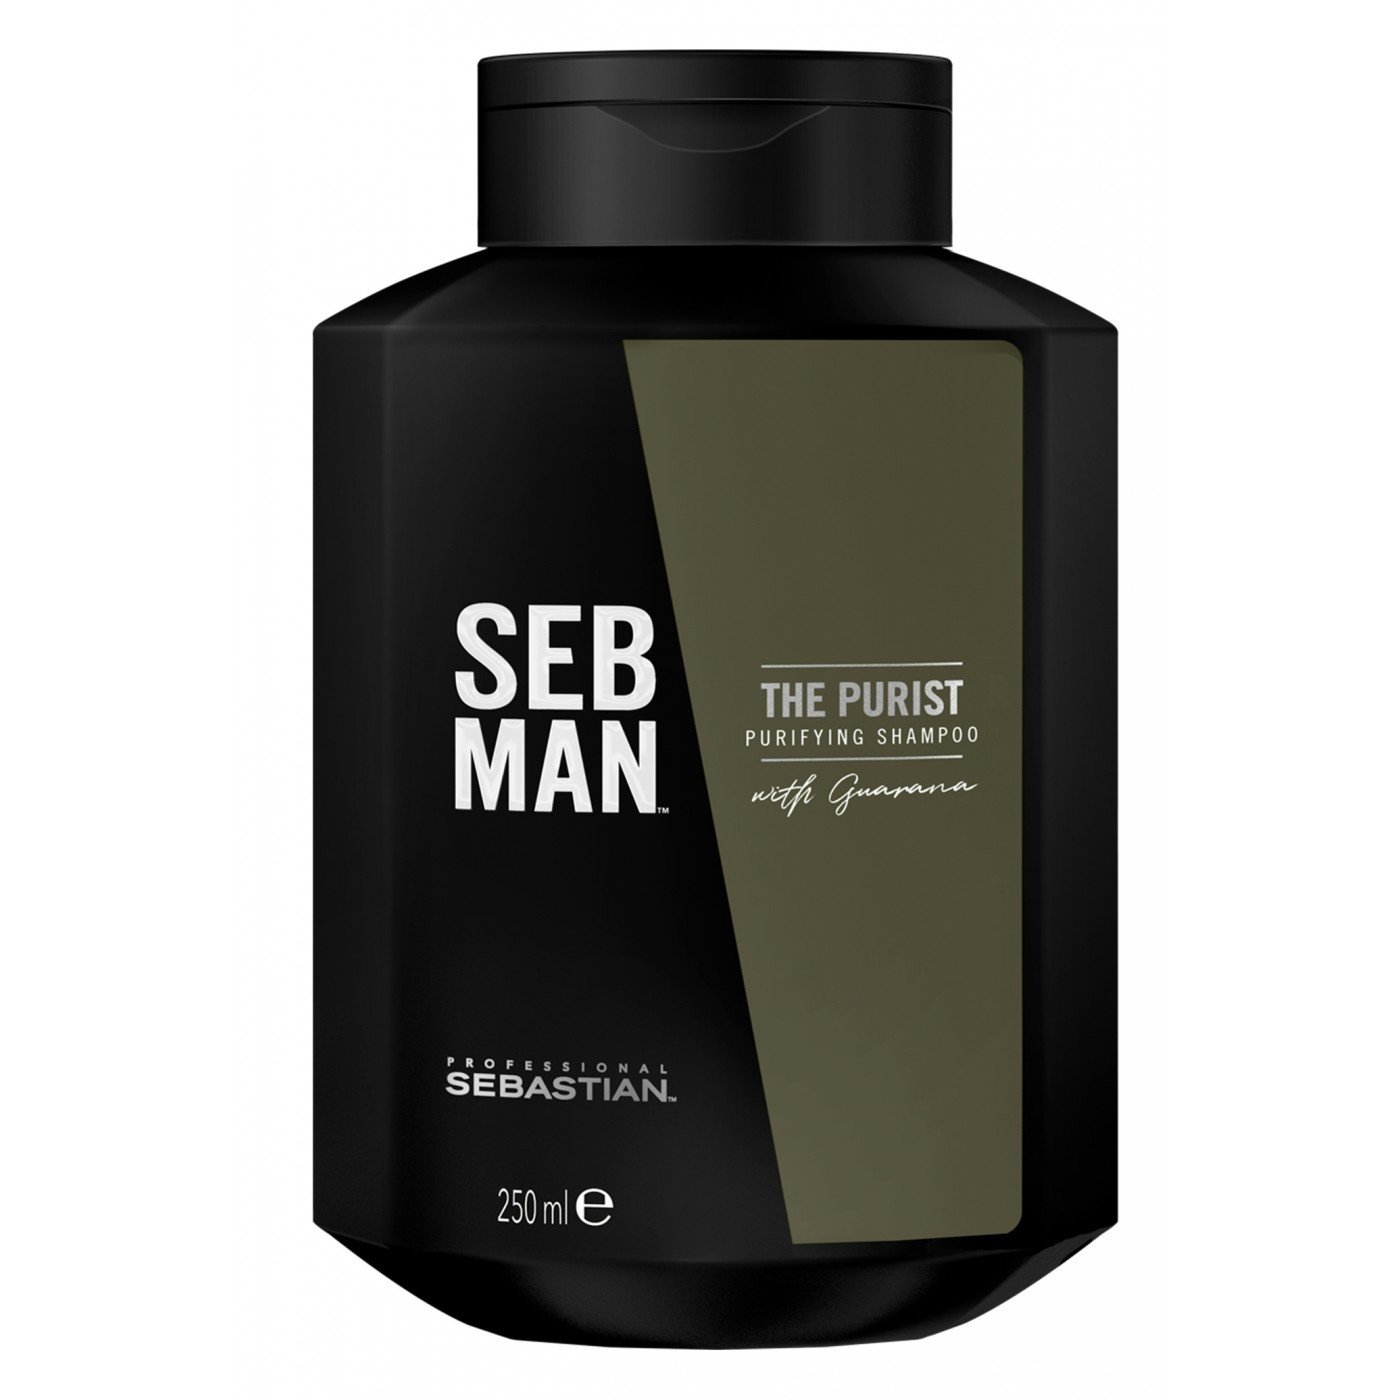 Мужские шампуни:  SEBASTIAN -  Очищающий шампунь для волос Sebastian The Purist Seb Man (250 мл) (250 мл)